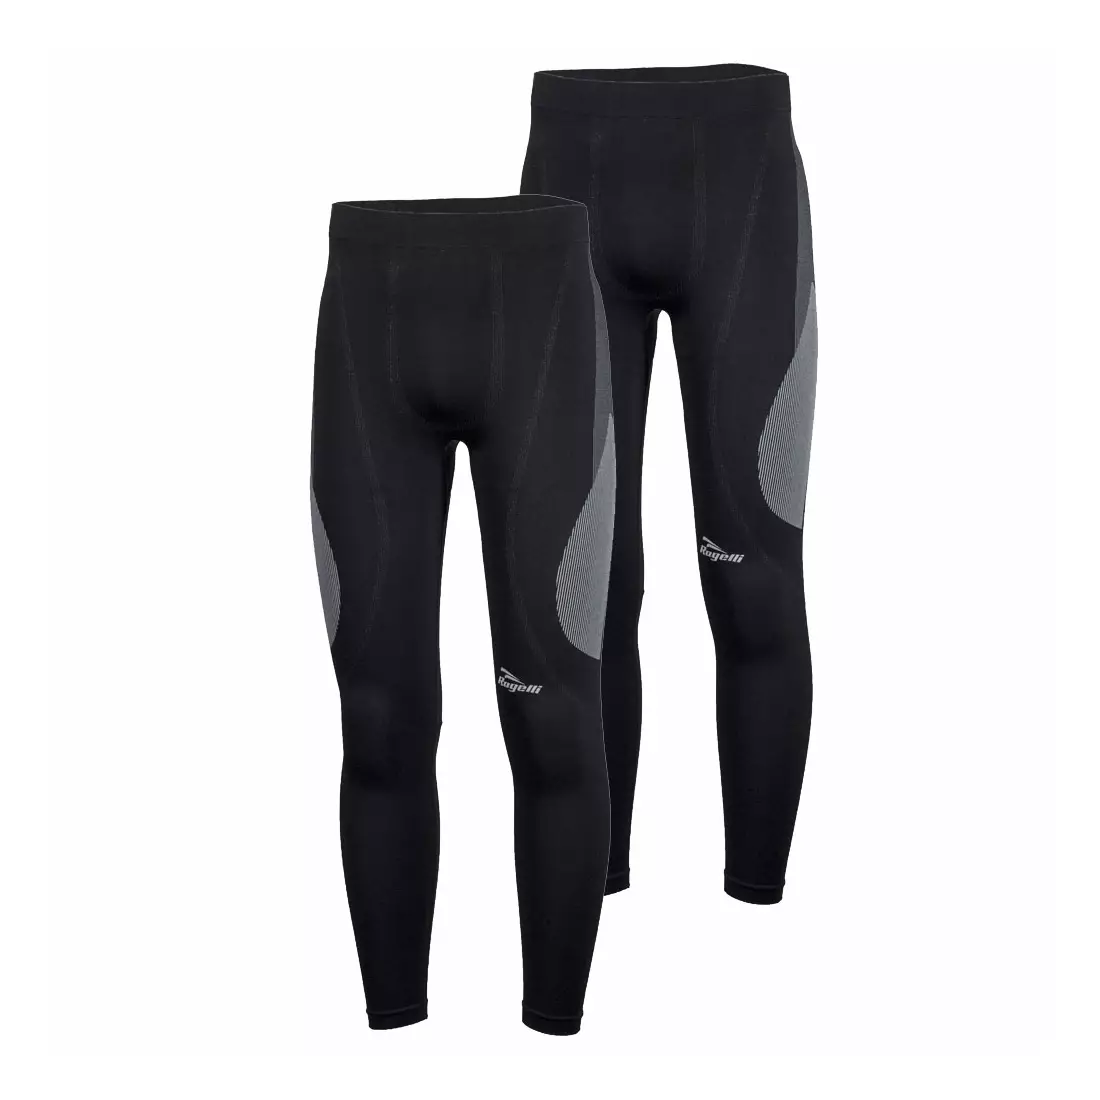 ROGELLI CORE 2-pack underwear - thermal pants, black 070.122